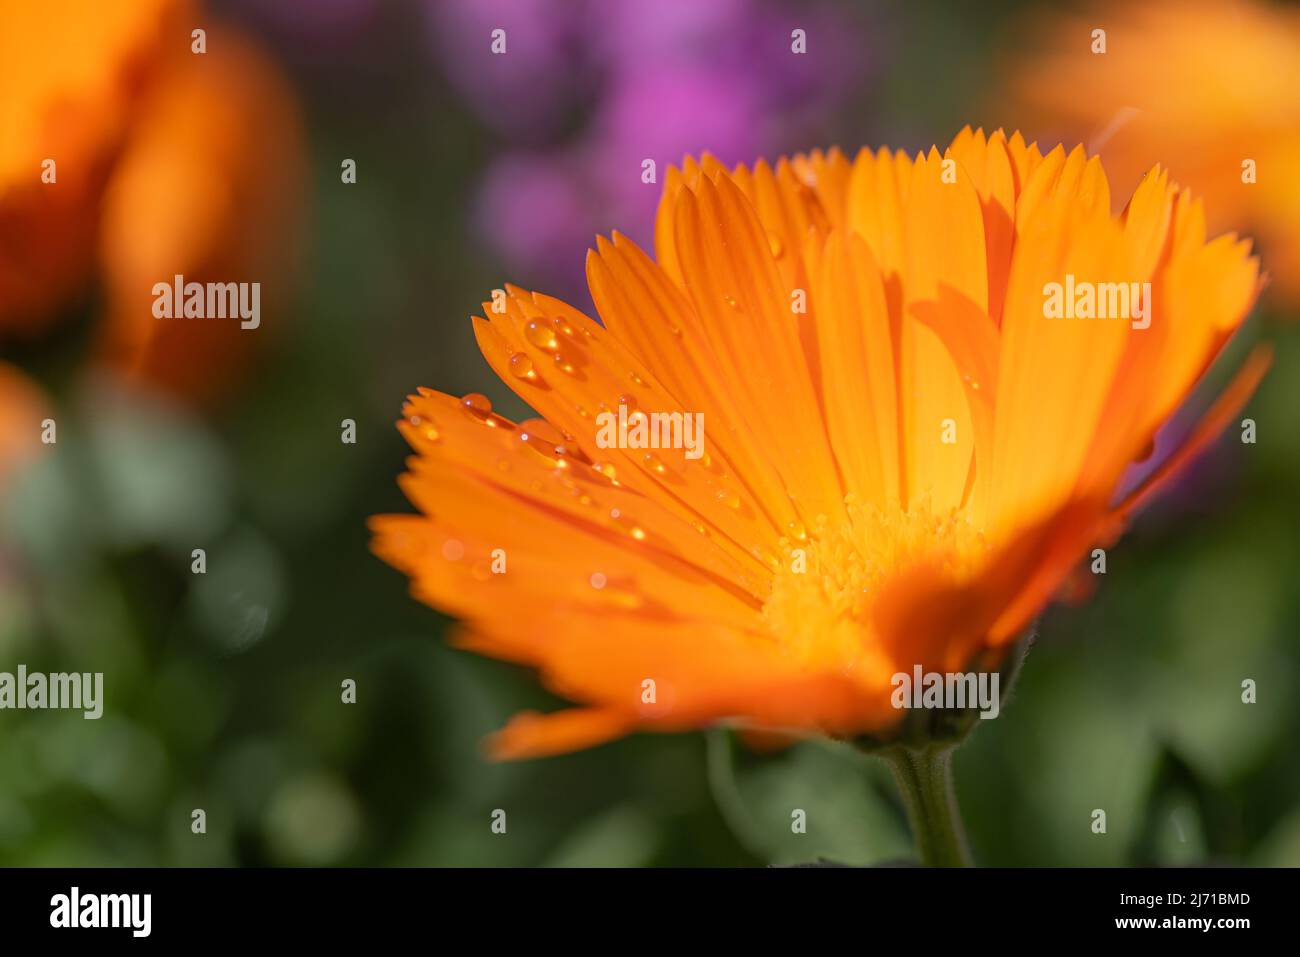 Pot Marigold (Calendula officinalis - Asteraceae) con alcune gocce di pioggia dopo un temporale, su sfondo sfocato. Pianta medicinale fiorente arancione. Foto Stock